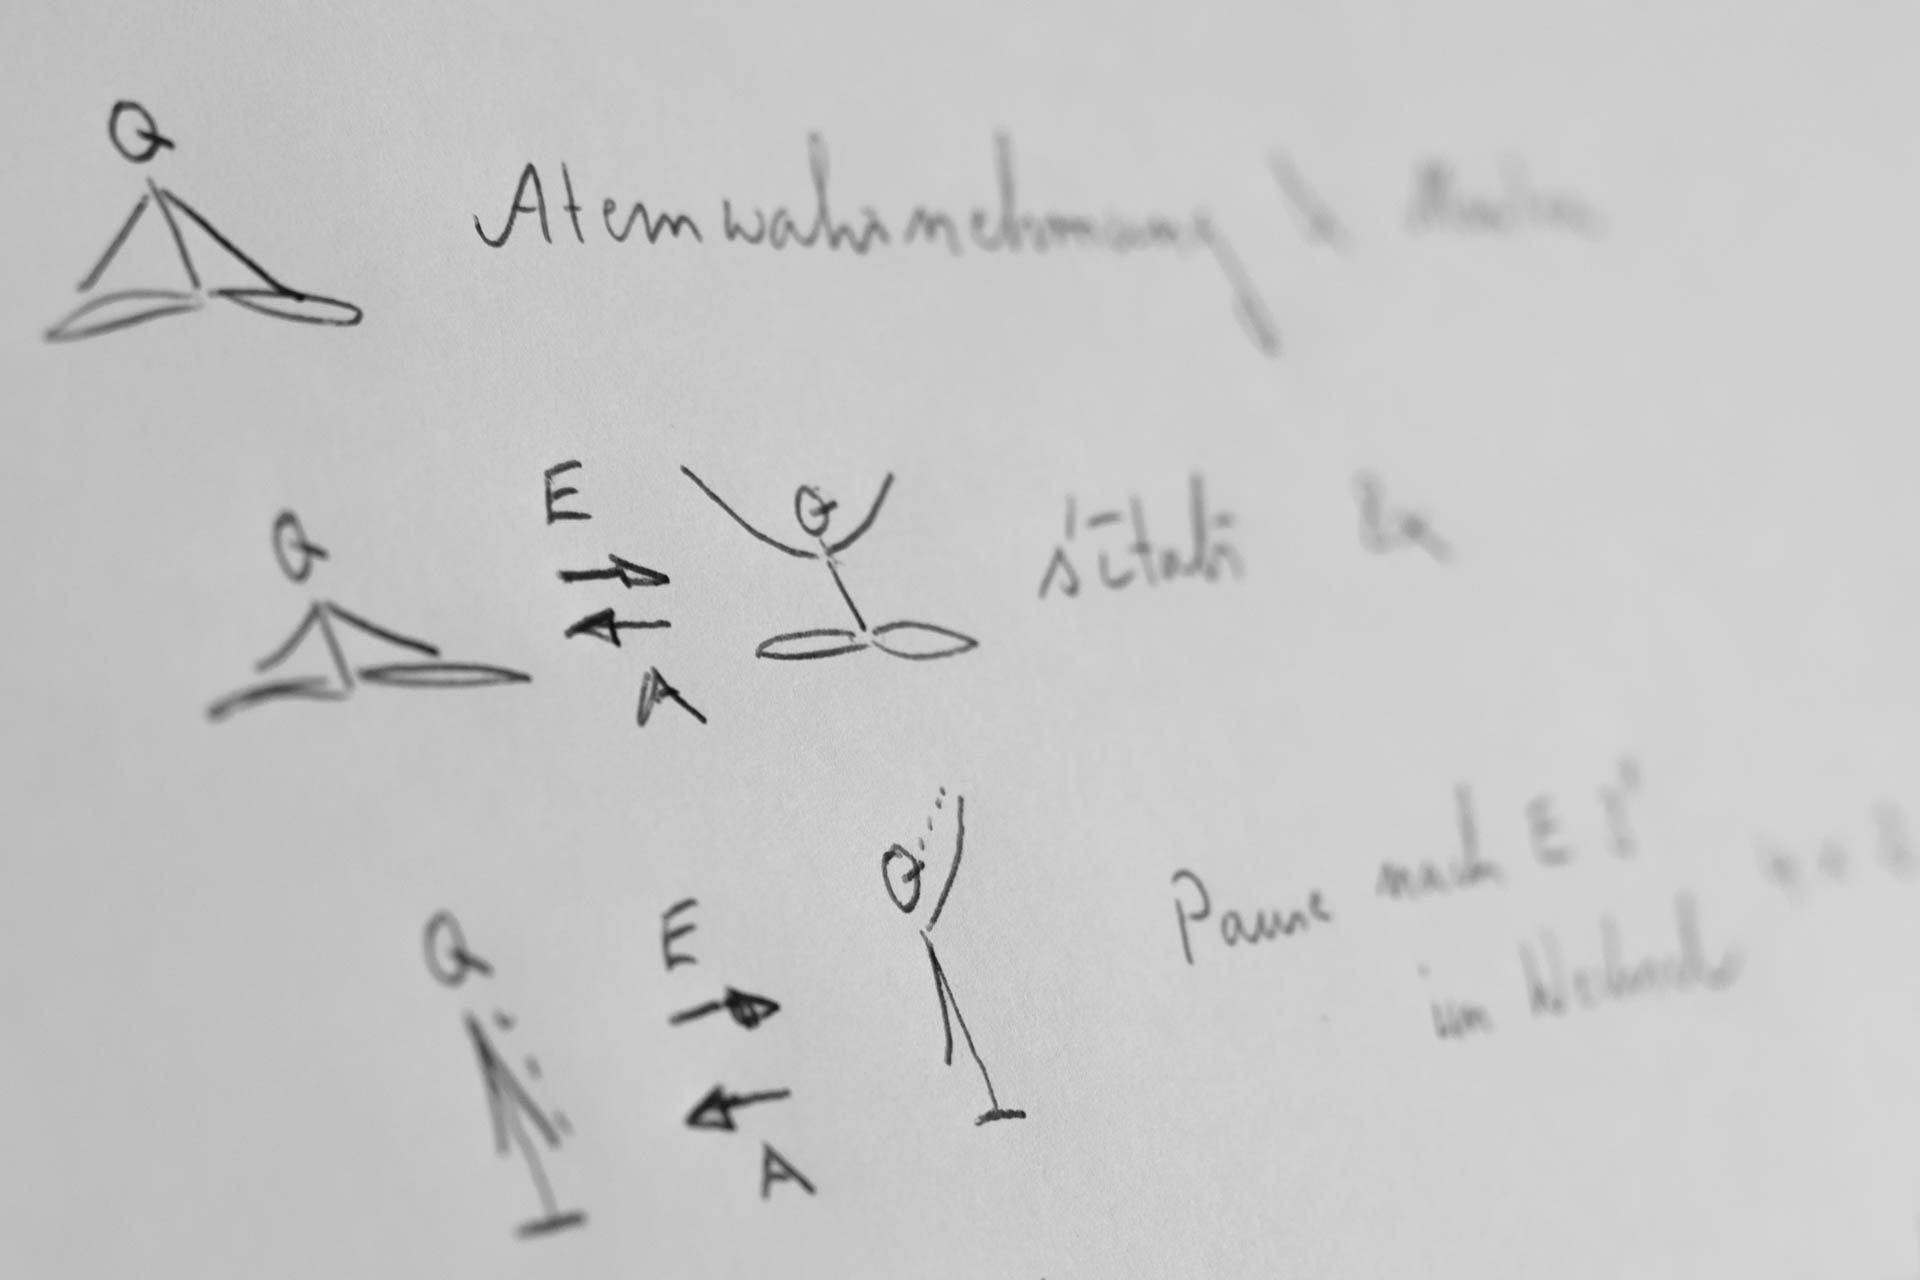 Yogasteno für Yogatherapie in Form von Strichfiguren mit Notizen zur Atem- und Bewegungsführung